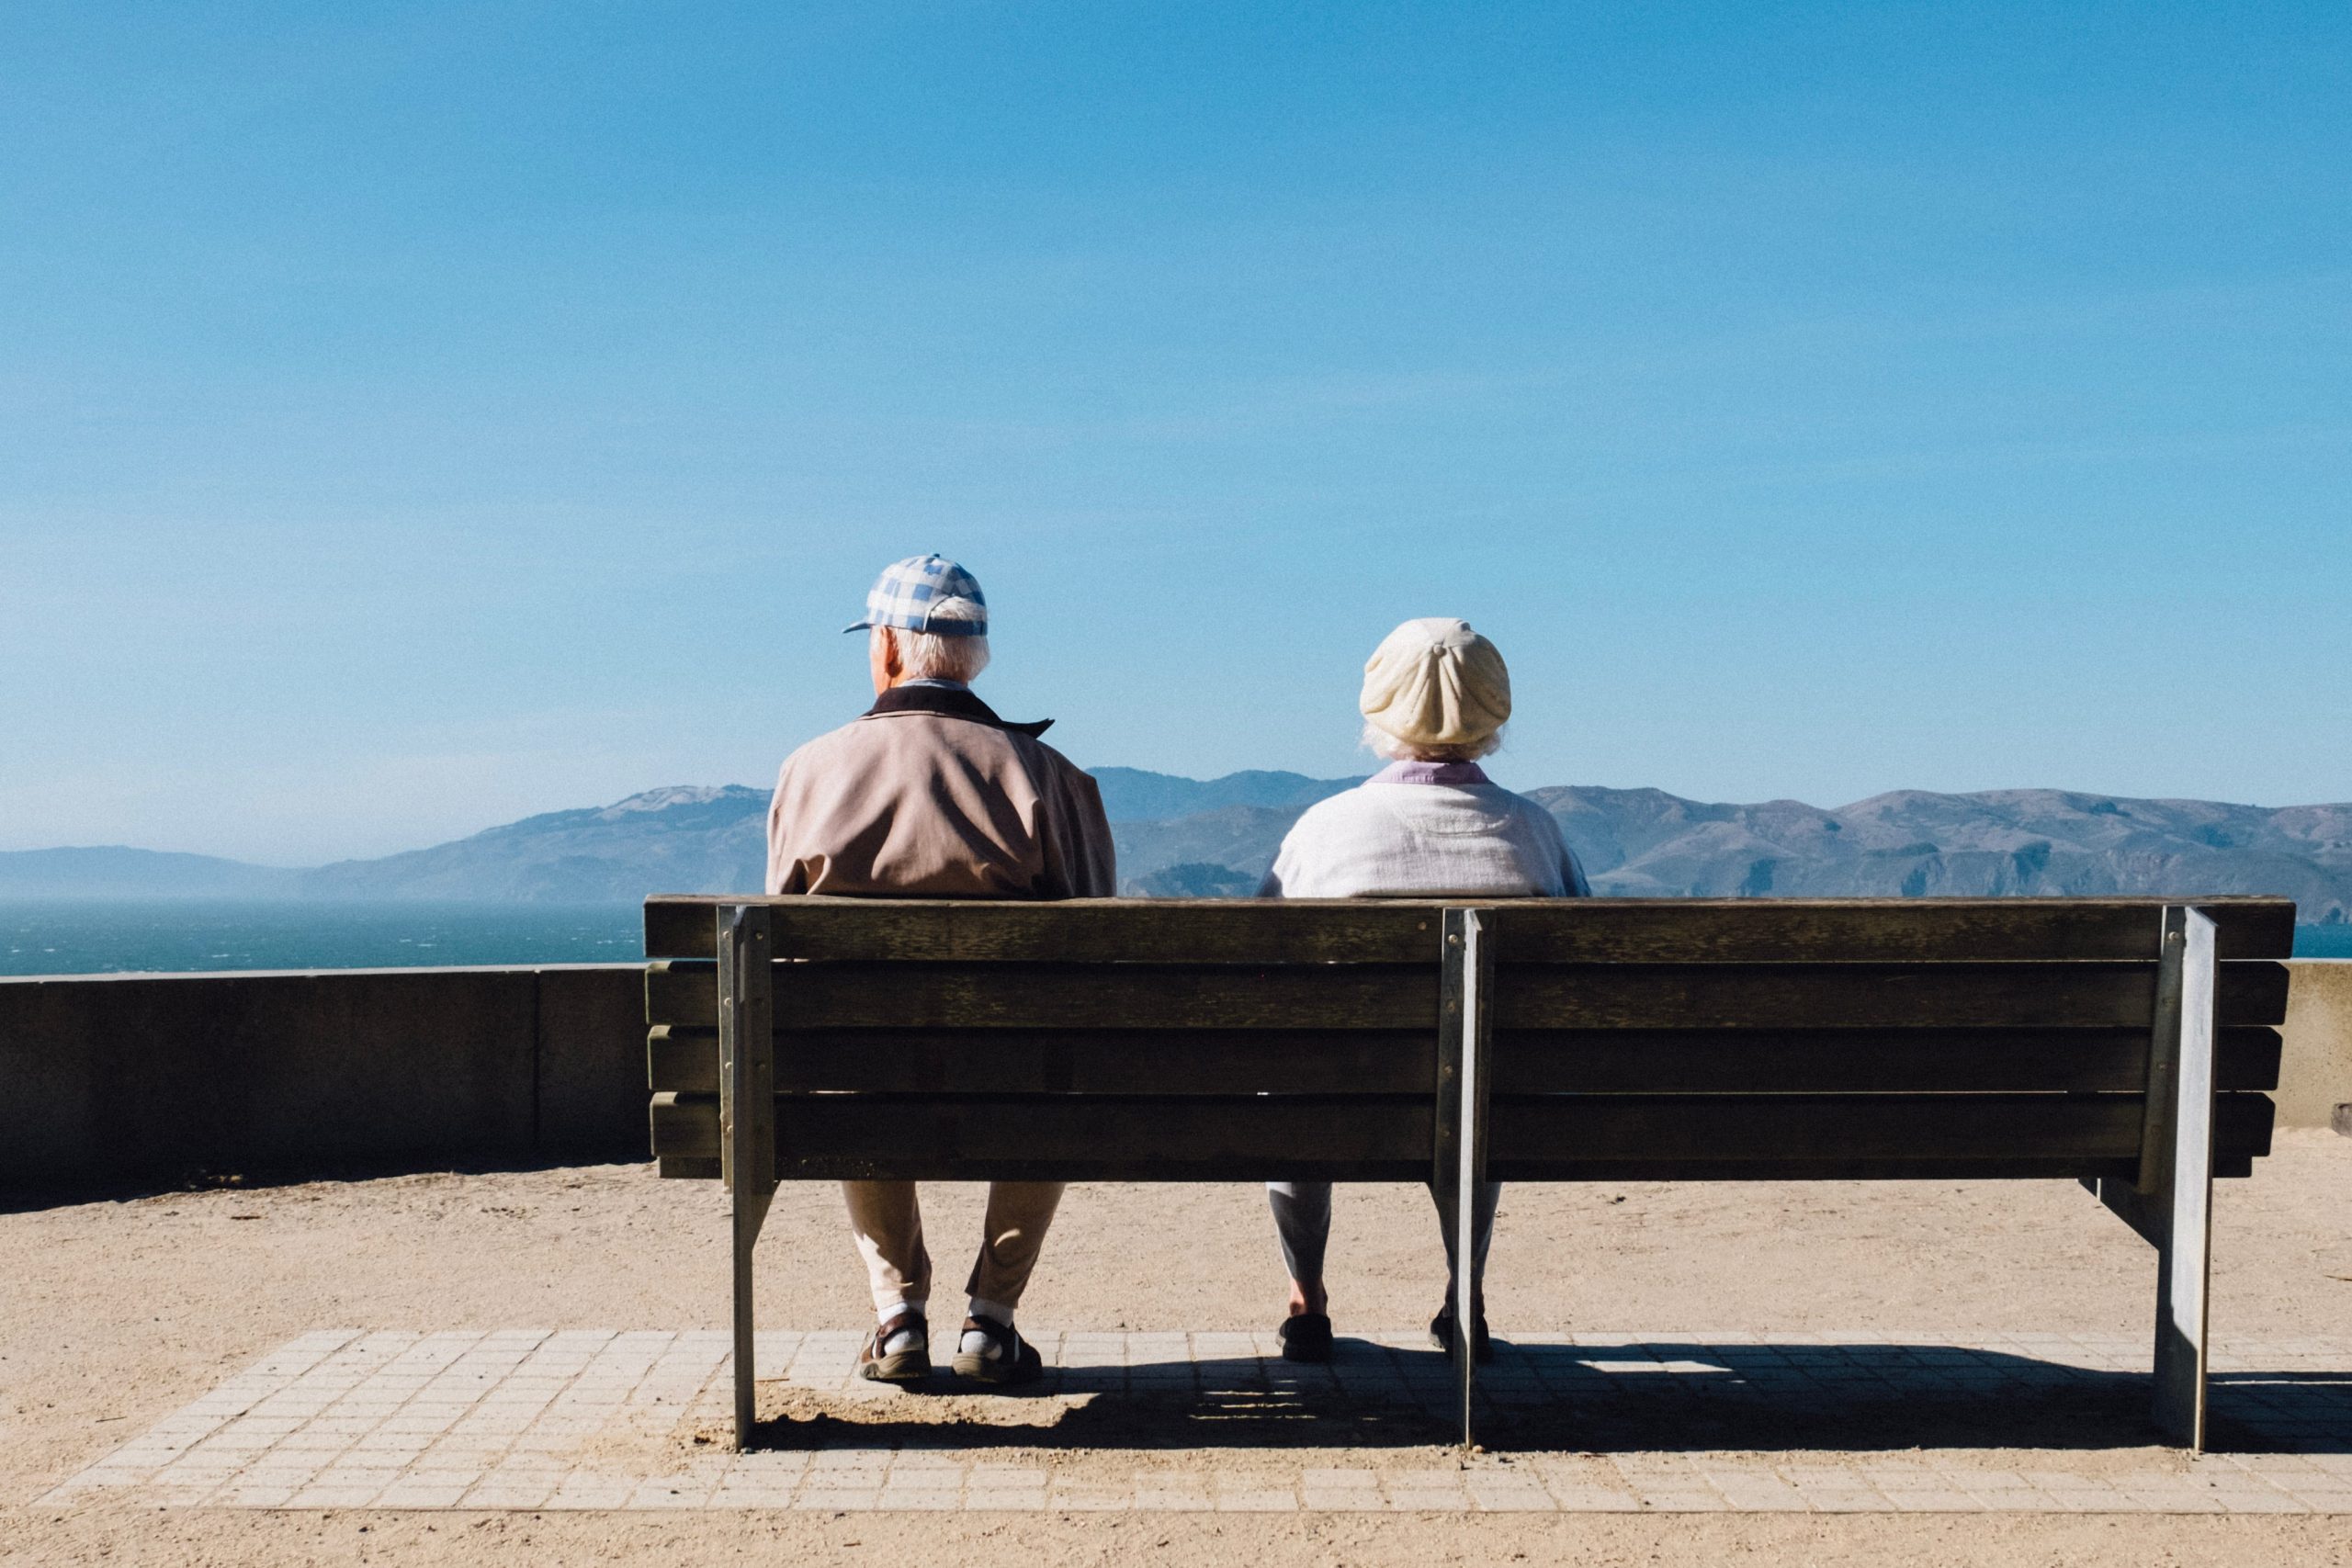 Un signore e una signora di spalle sono seduti su una panchina mentre guardano le colline accarezzate dal mare.